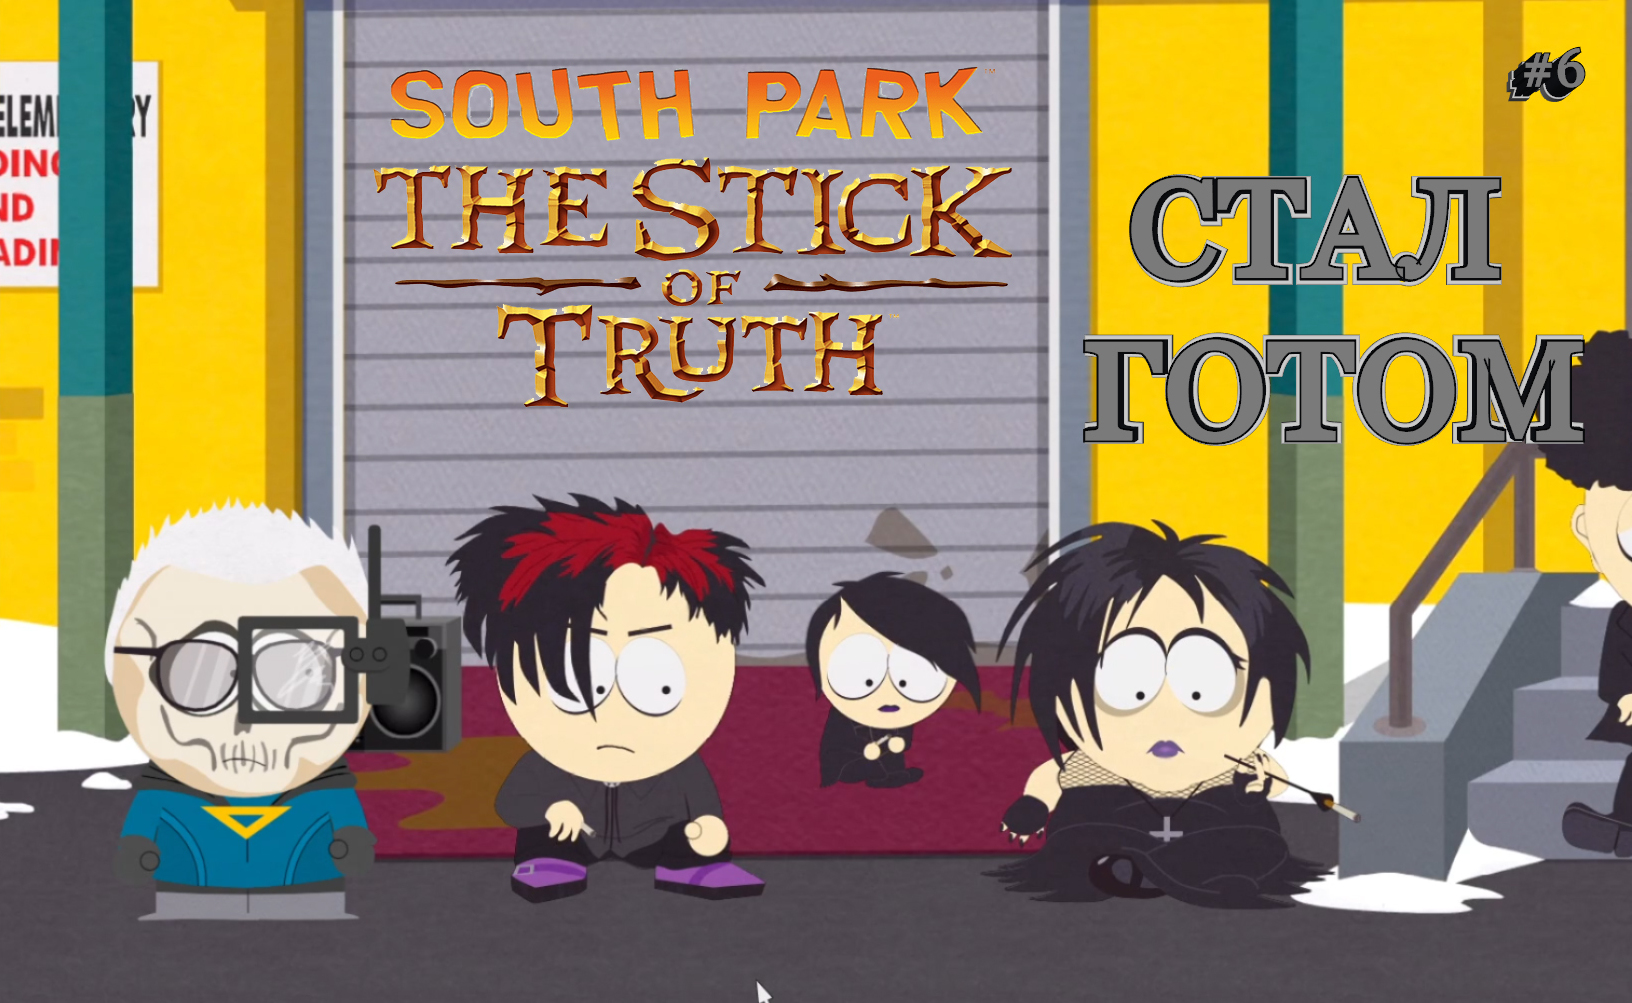 South park the stick of truth скрытые достижения в стим фото 87